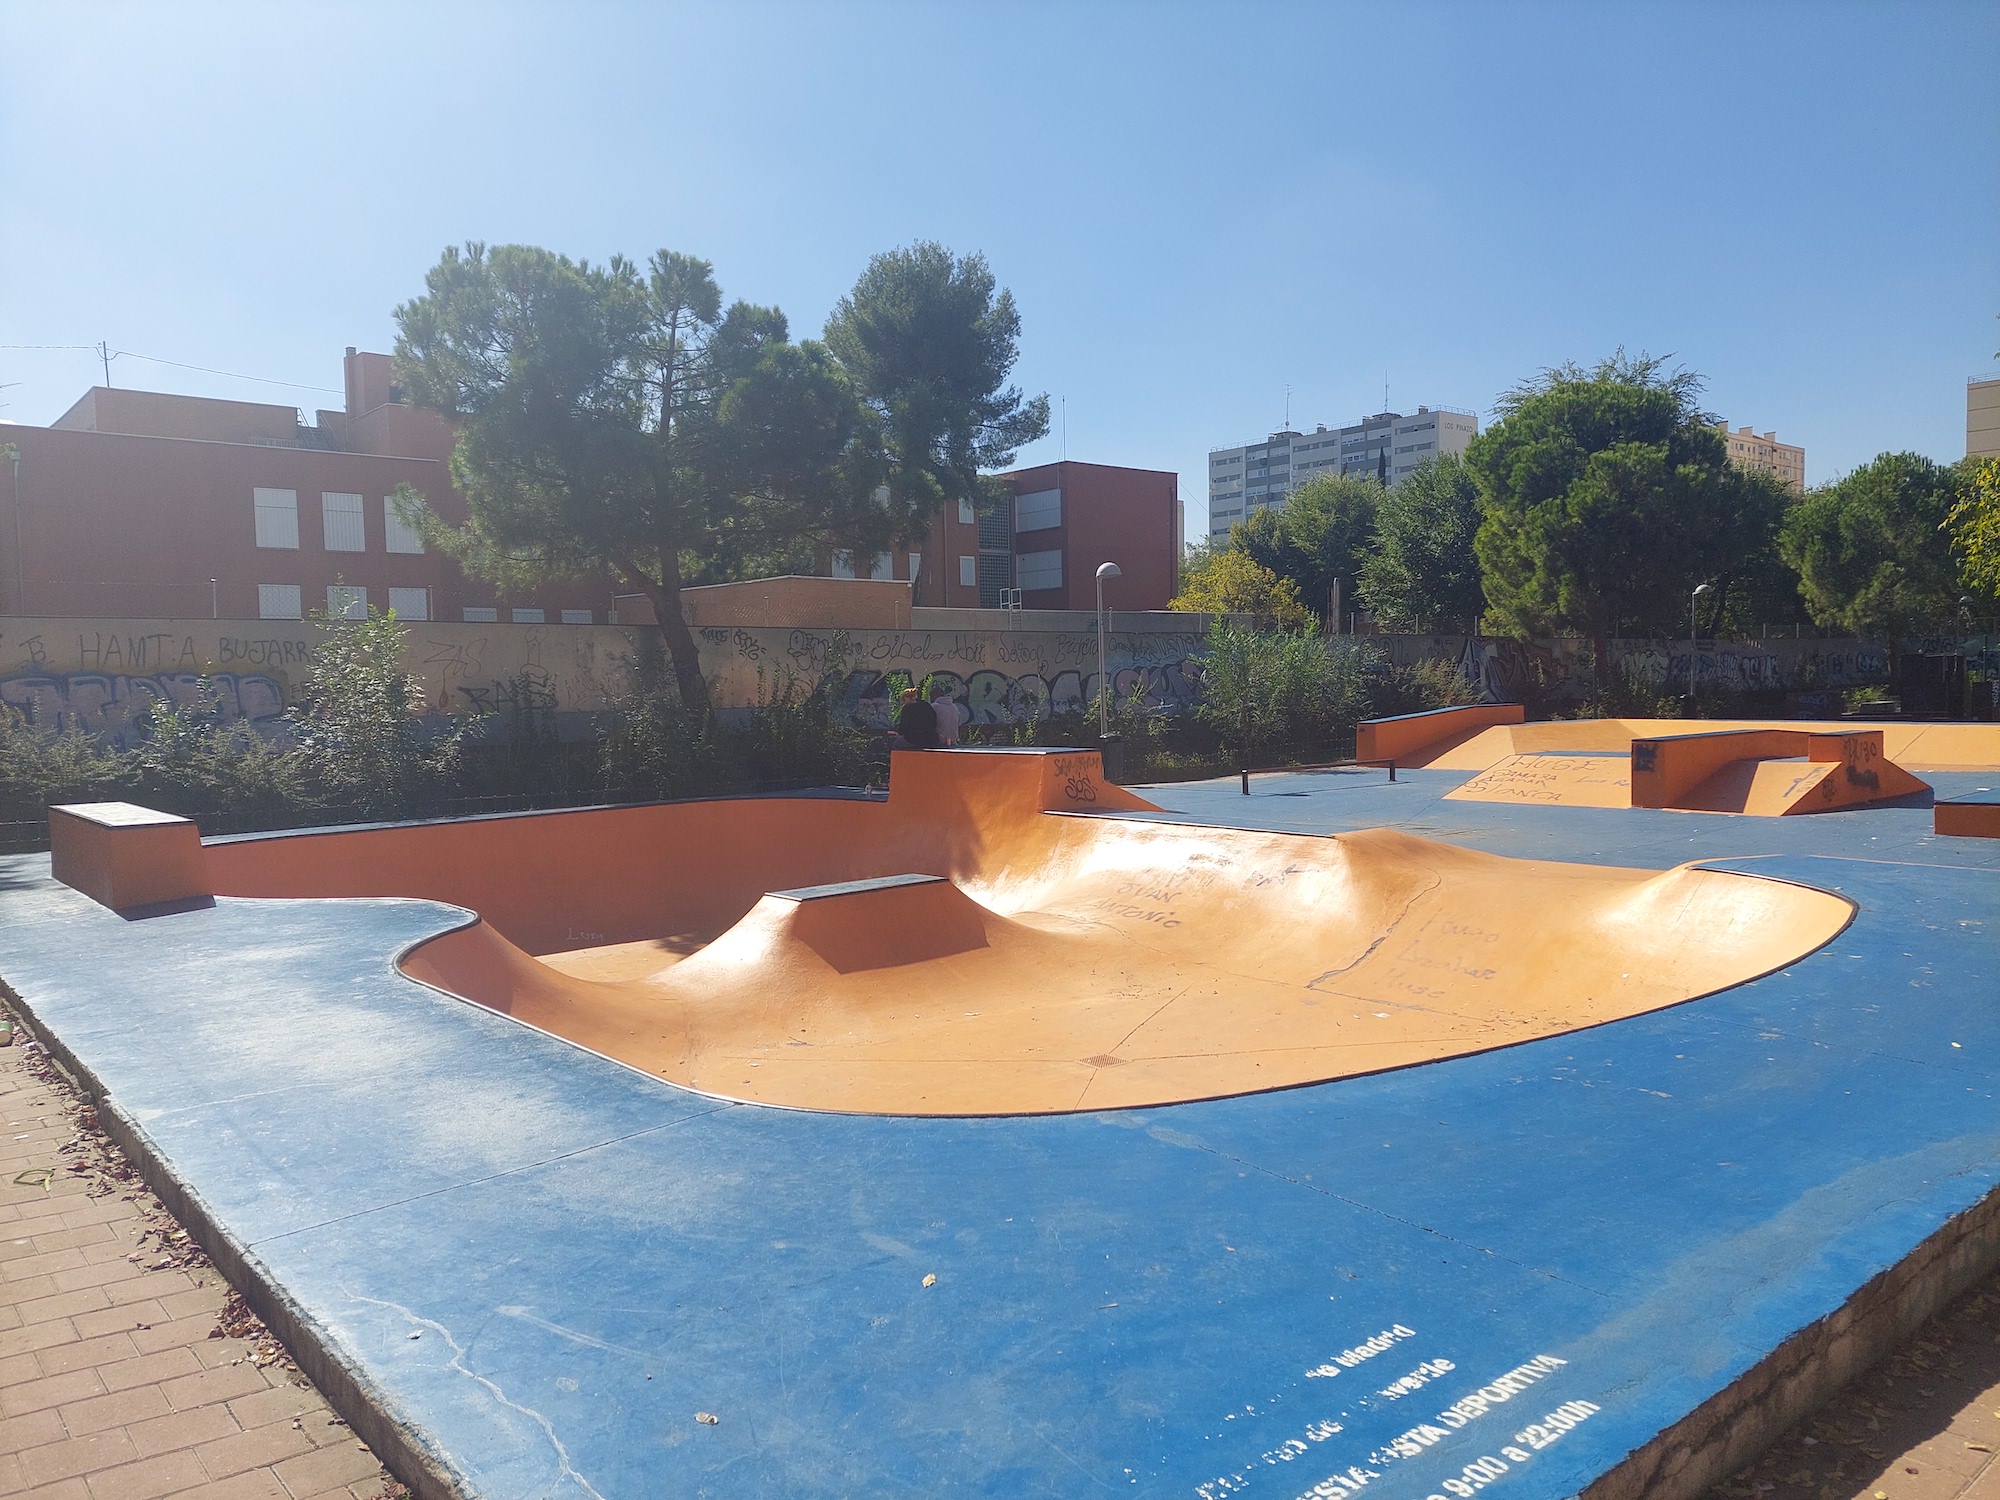 San Cristobal skatepark